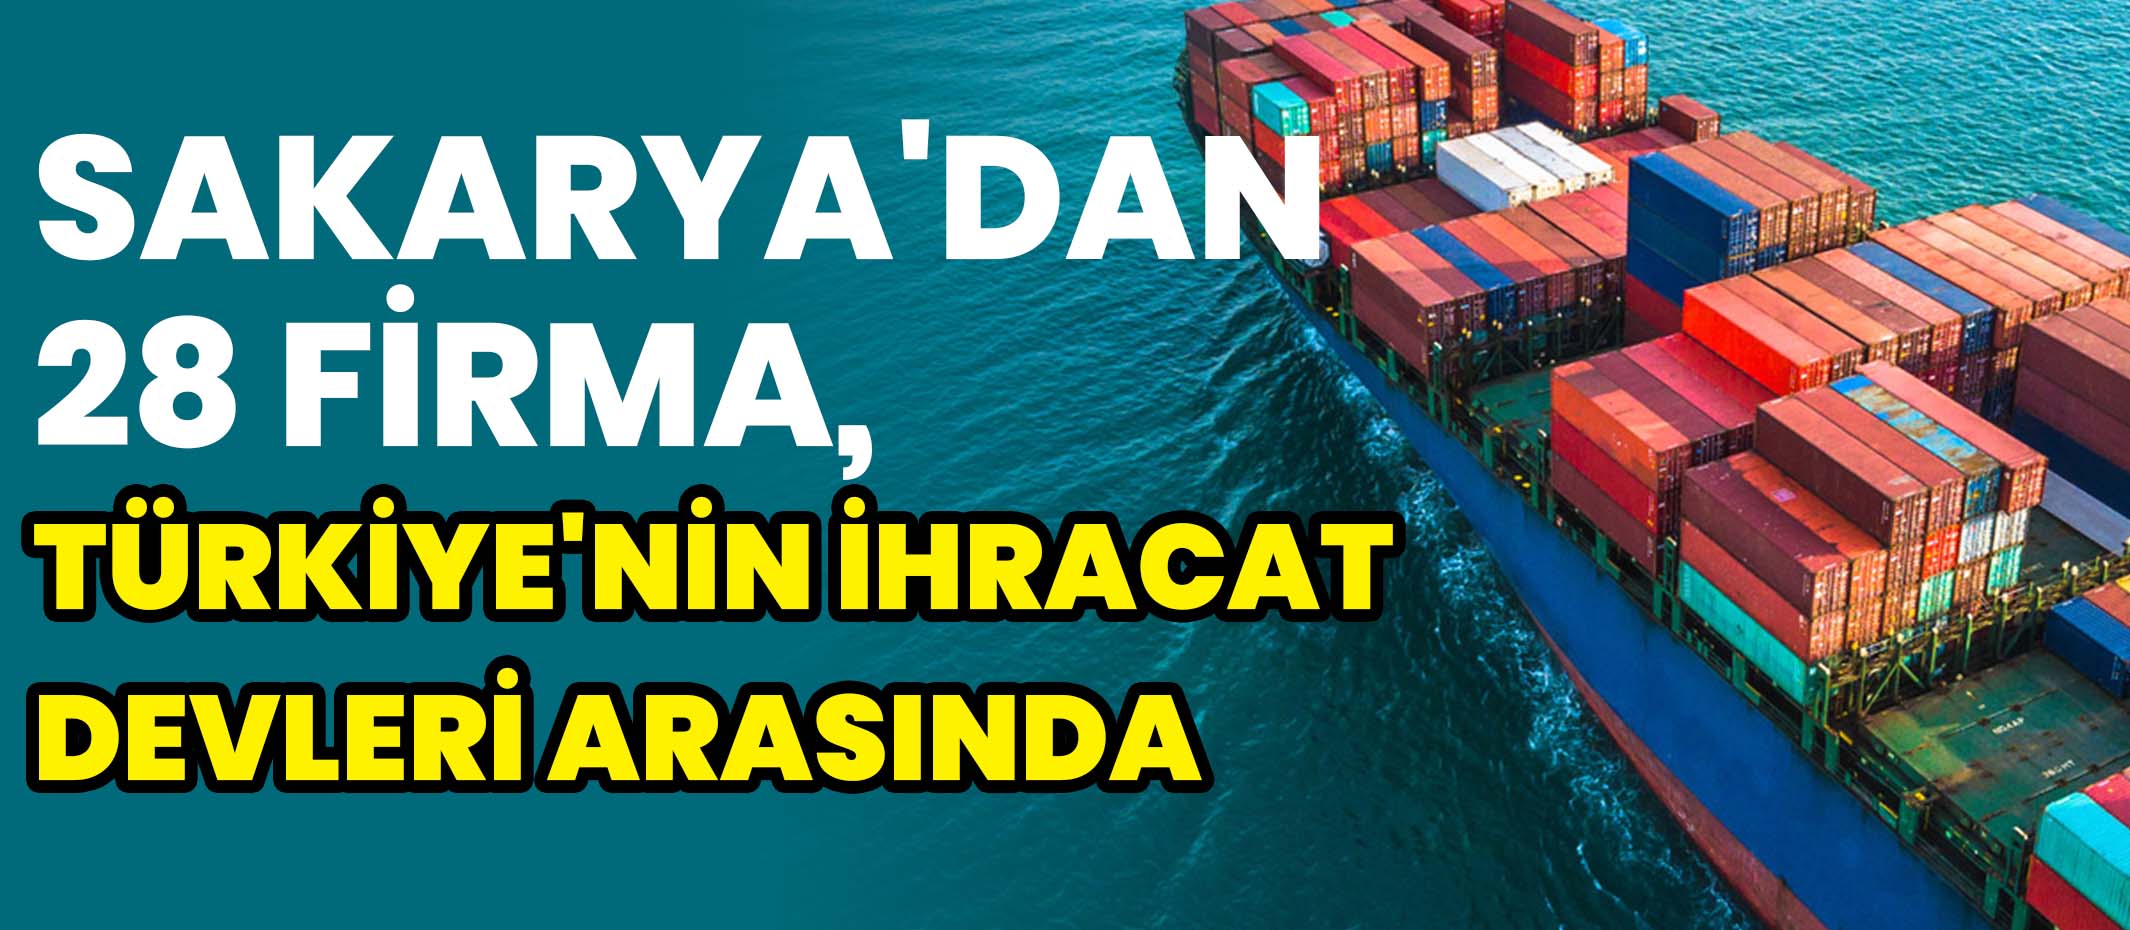 Sakarya'dan 28 Firma, Türkiye'nin İhracat Devleri Arasında